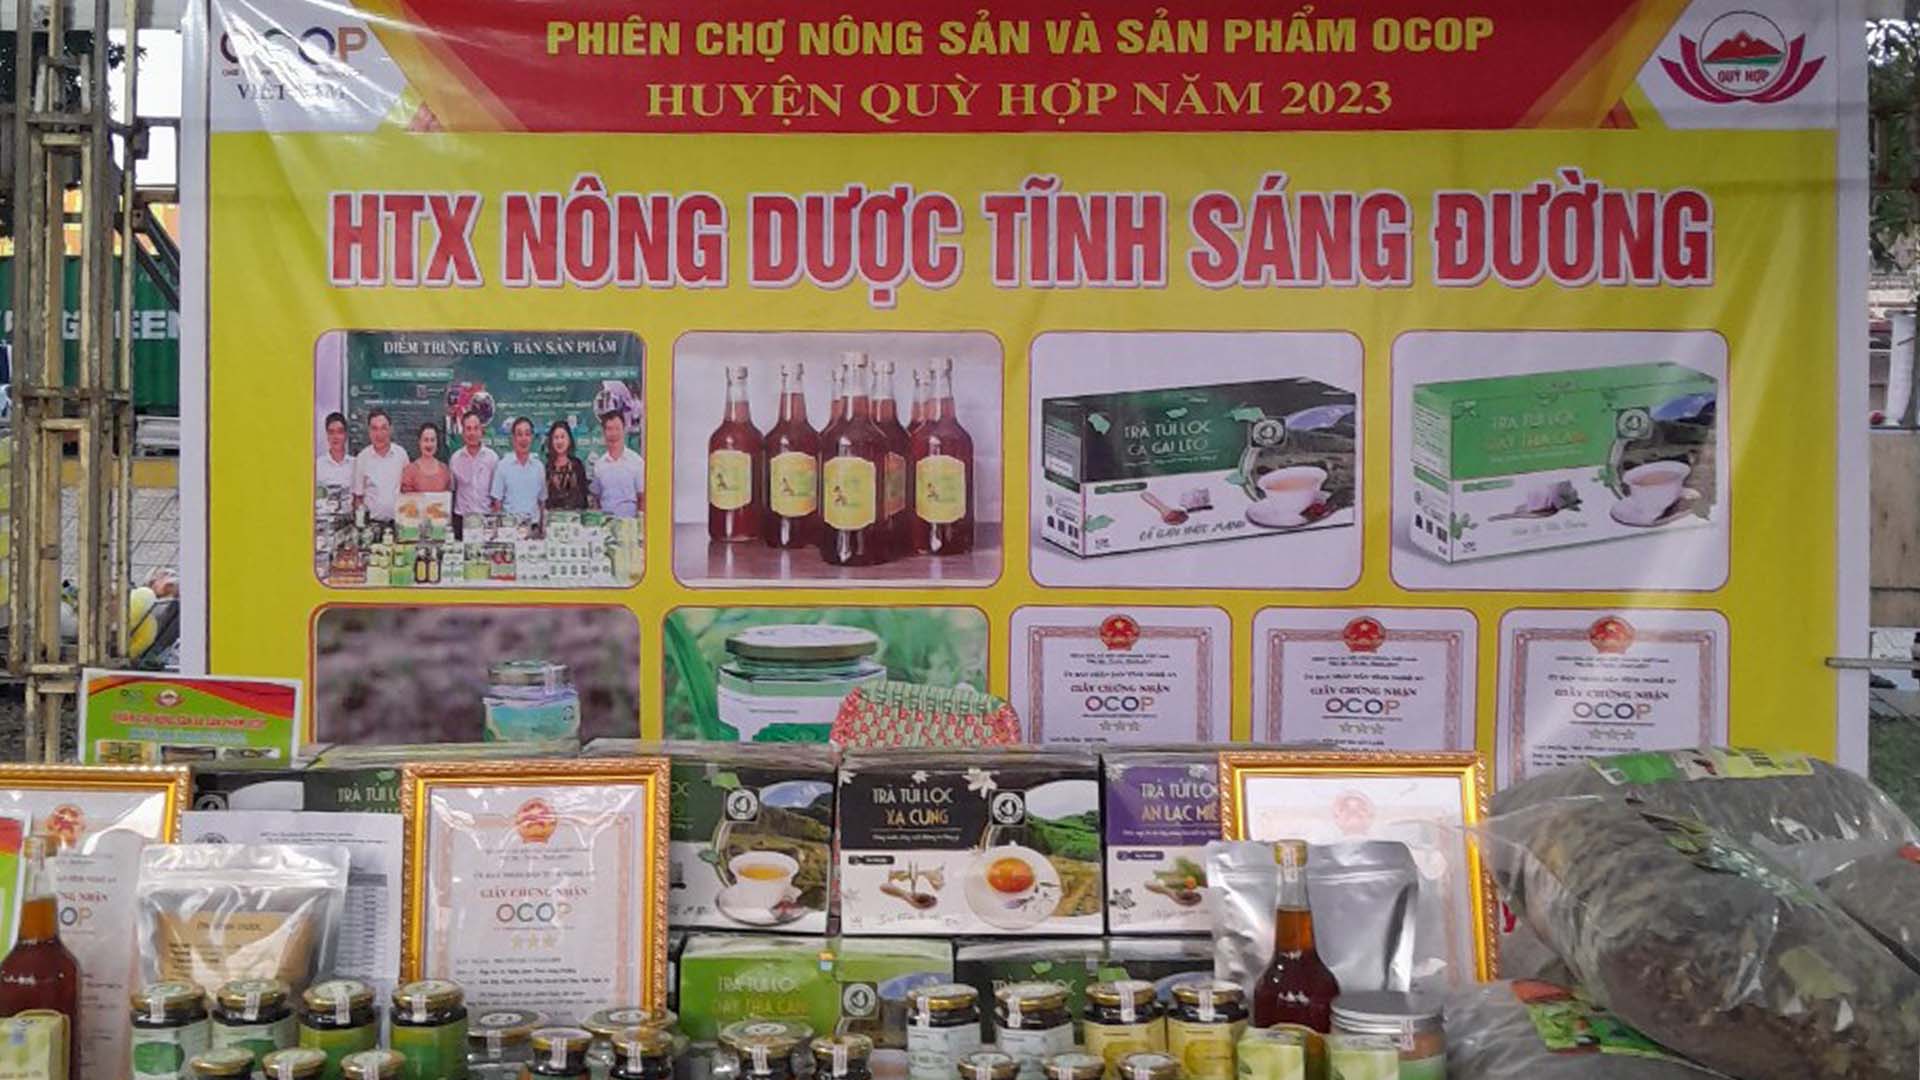 Nghệ An: Phiên chợ OCOP thắm tình đại đoàn kết tại huyện Quỳ Hợp